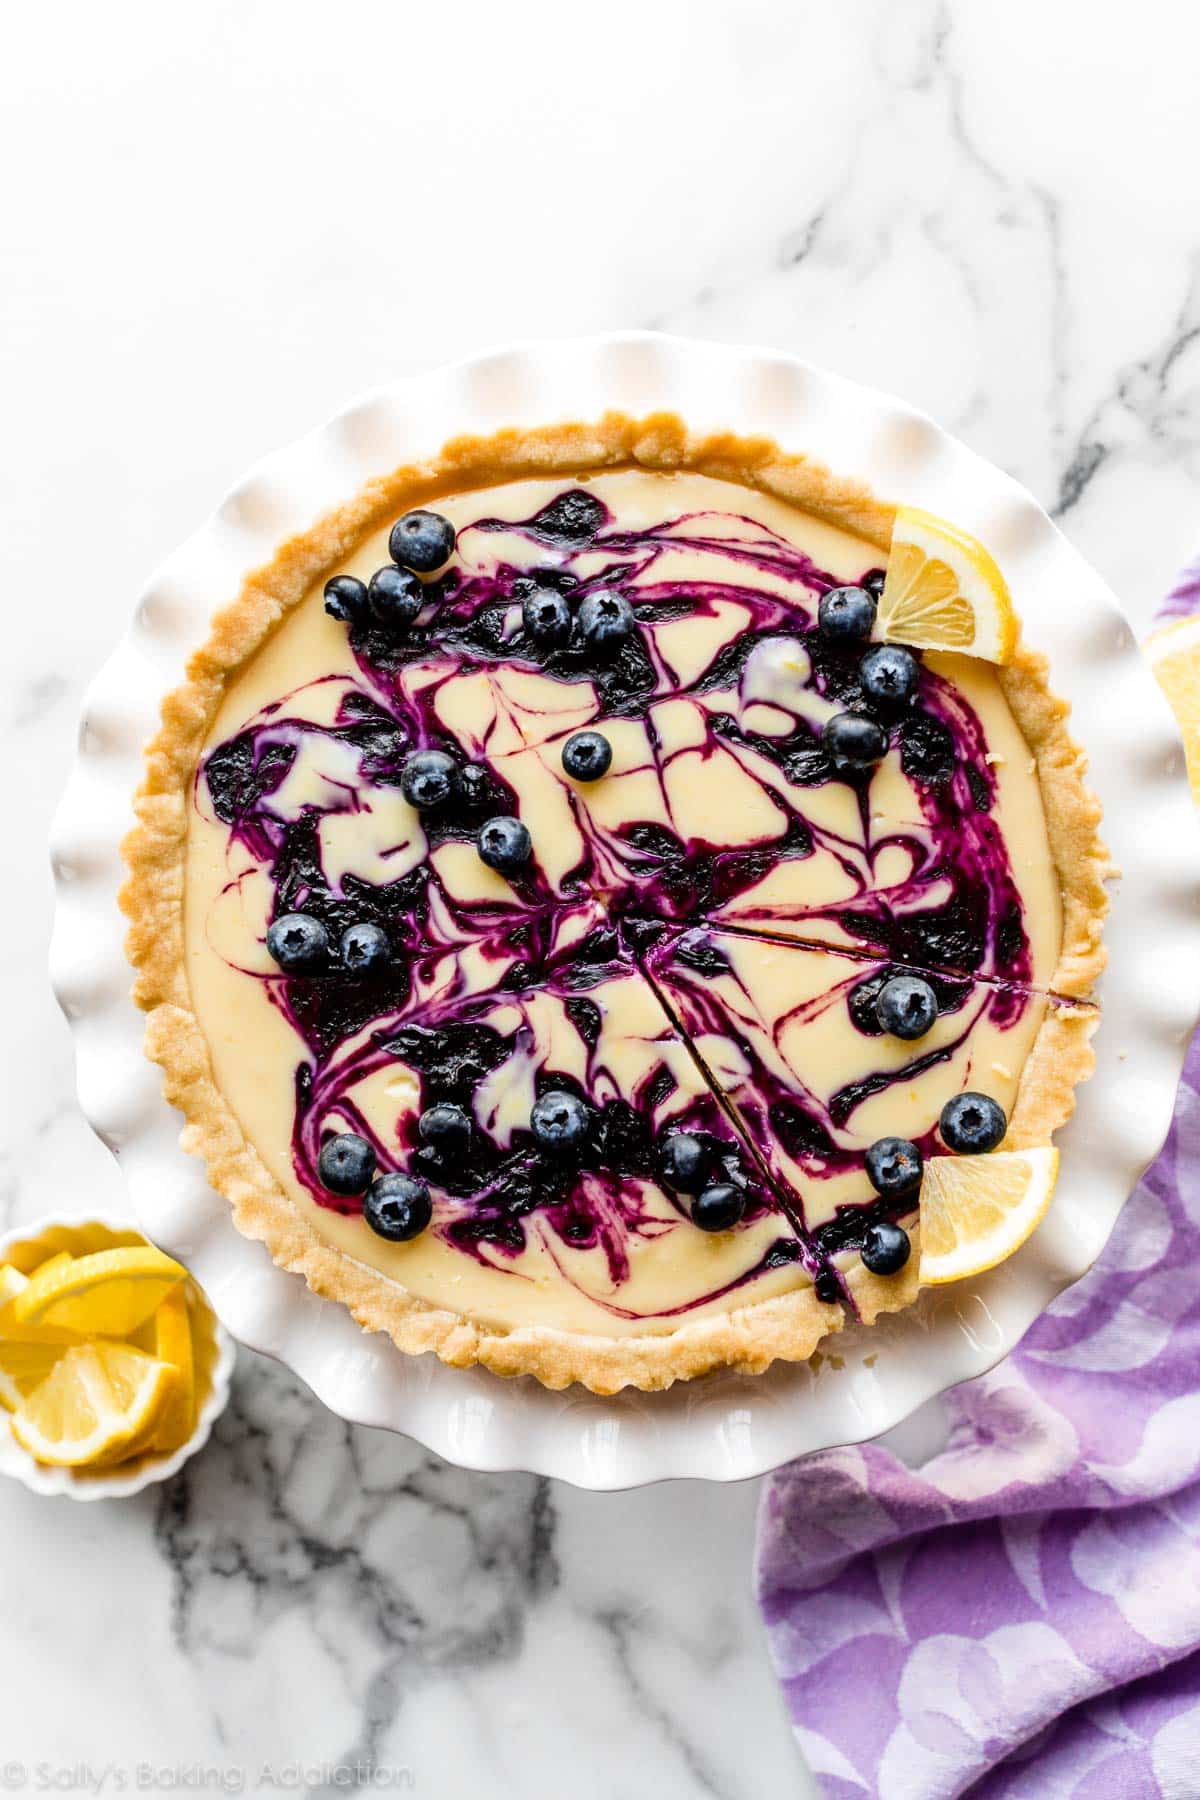 Lemon Blueberry Tart Recipe - Spring Dessert Ideas